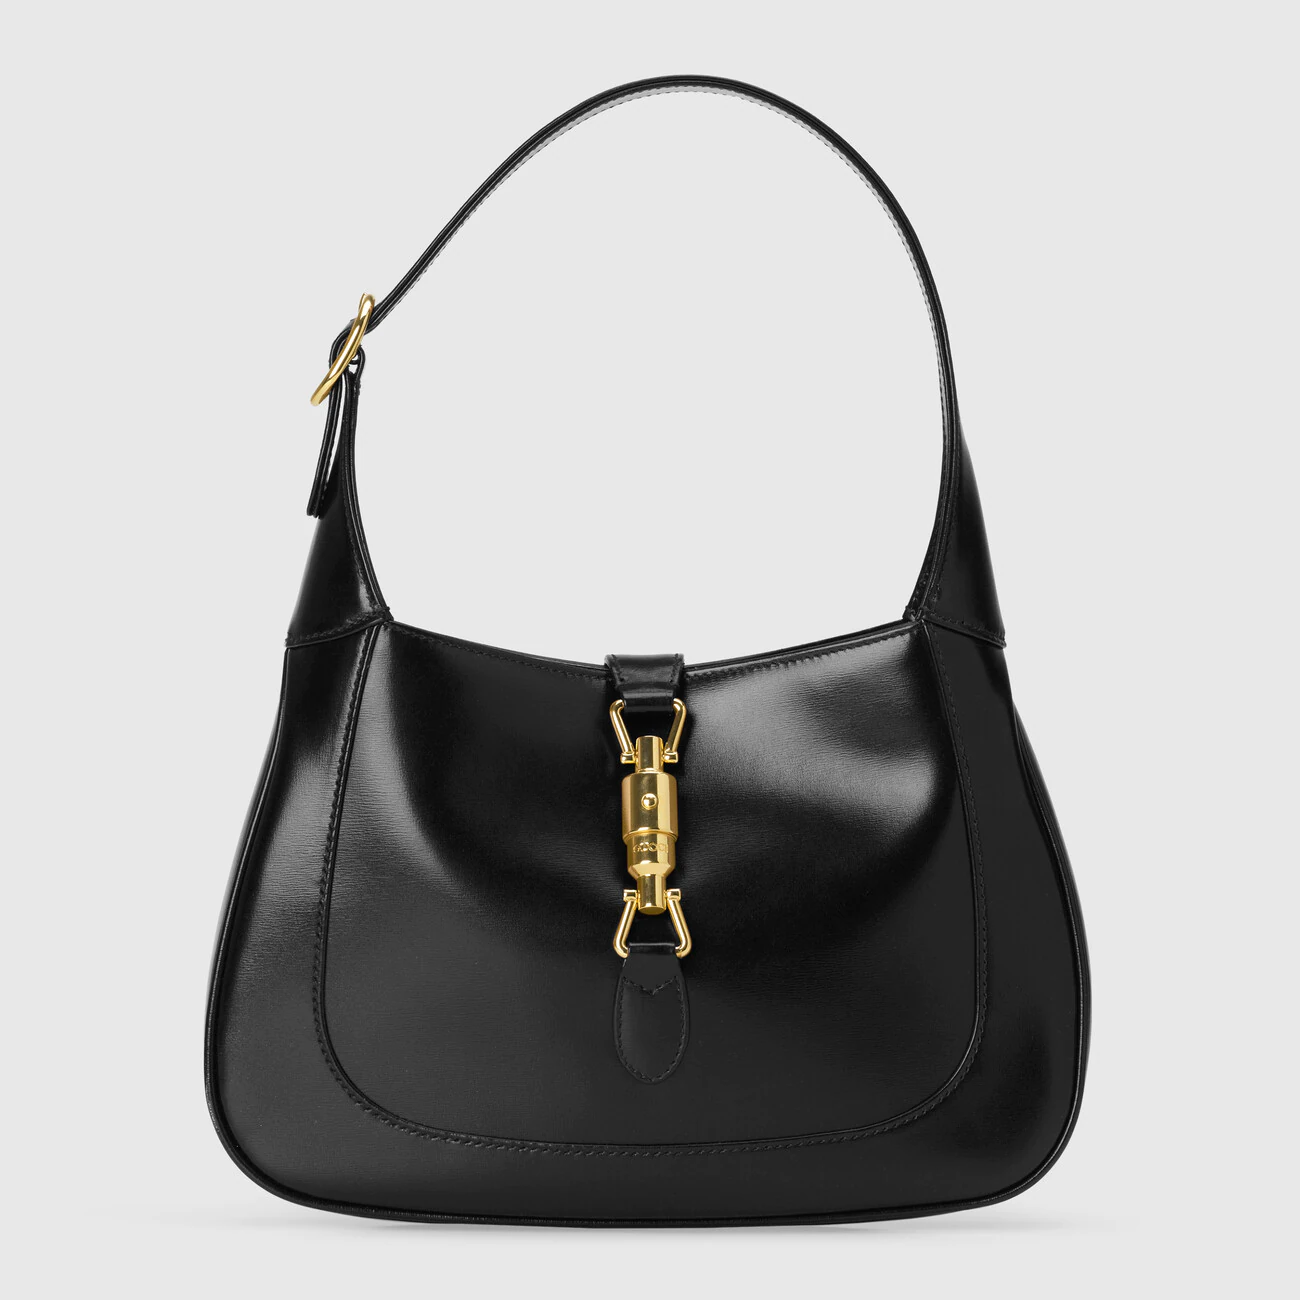 Designer Bags Inspired by Women: Jane Birkin, Grace Kelly, Jackie O – WWD